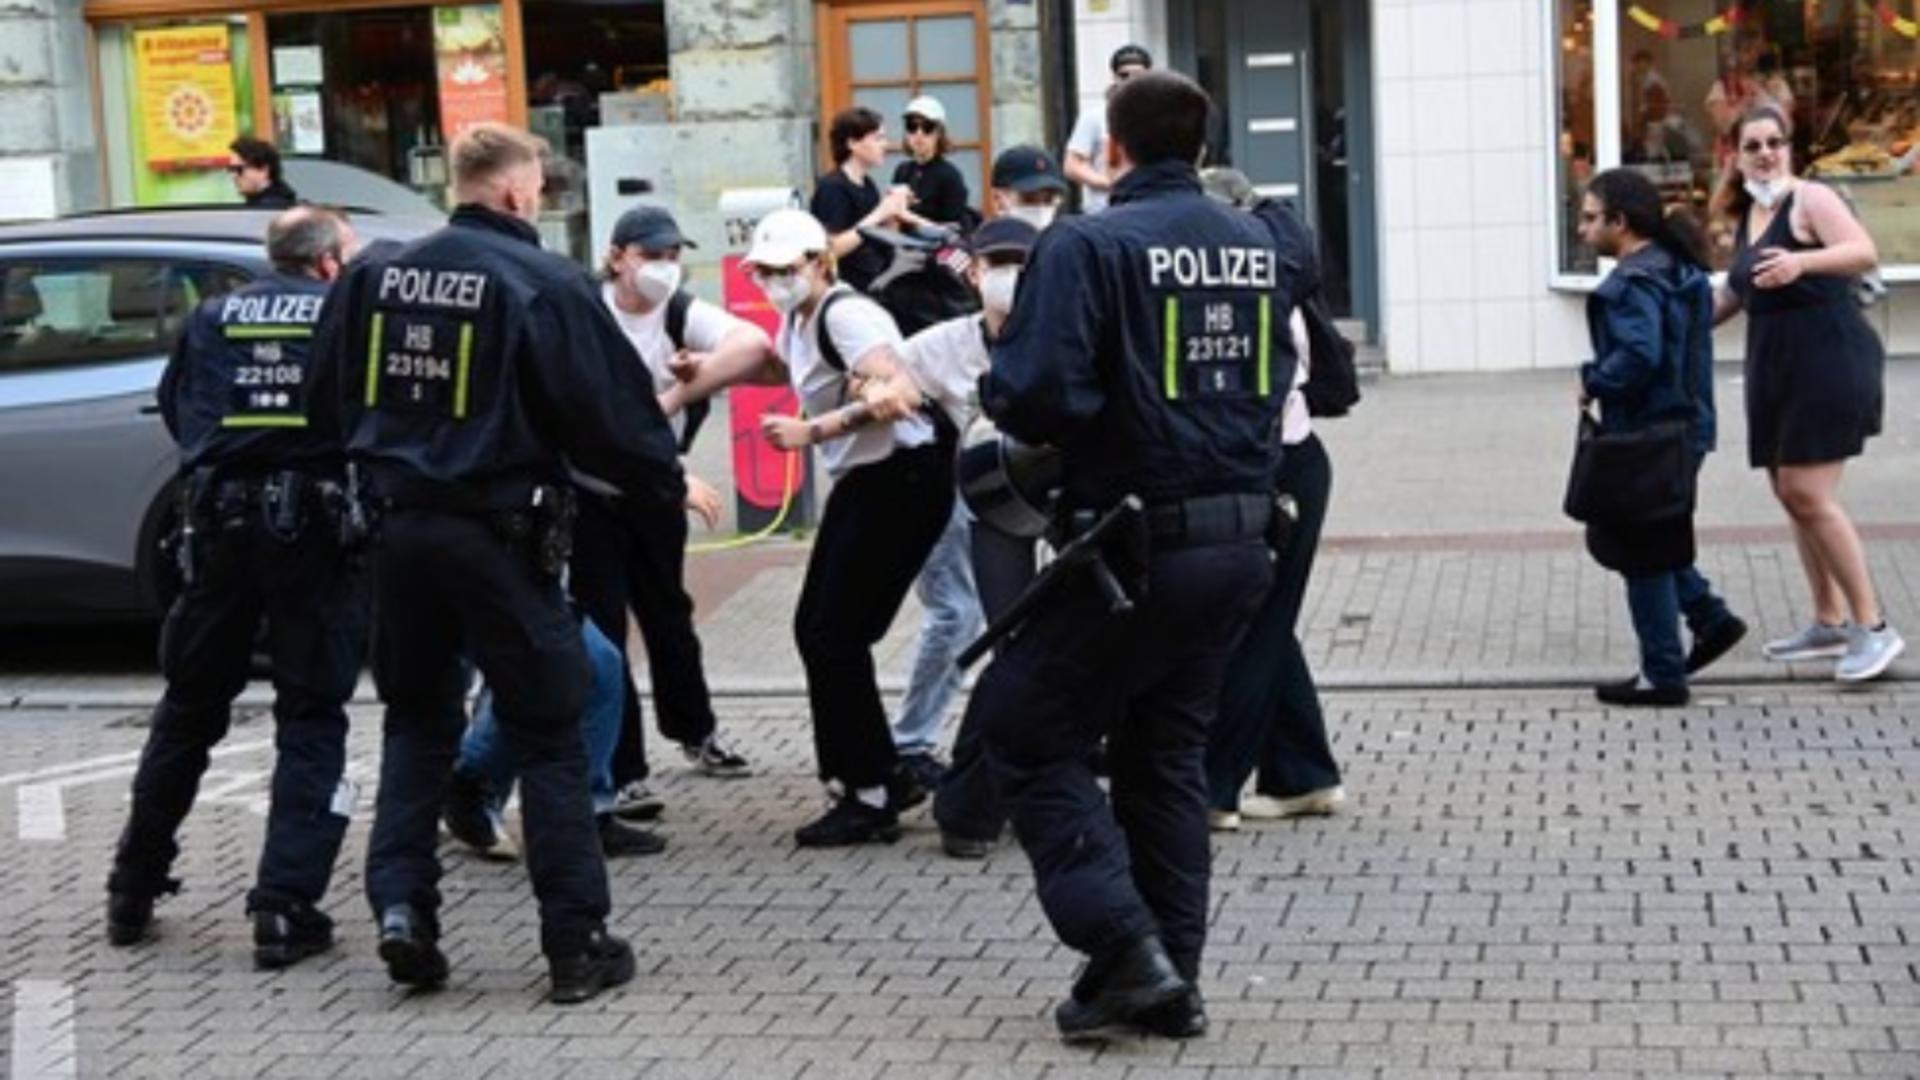 Bătaie între poliţie şi protestari, în Germania. Oamenii furioși încercau să împiedice accesul la congresul celui mai mare partid de extremă dreaptă